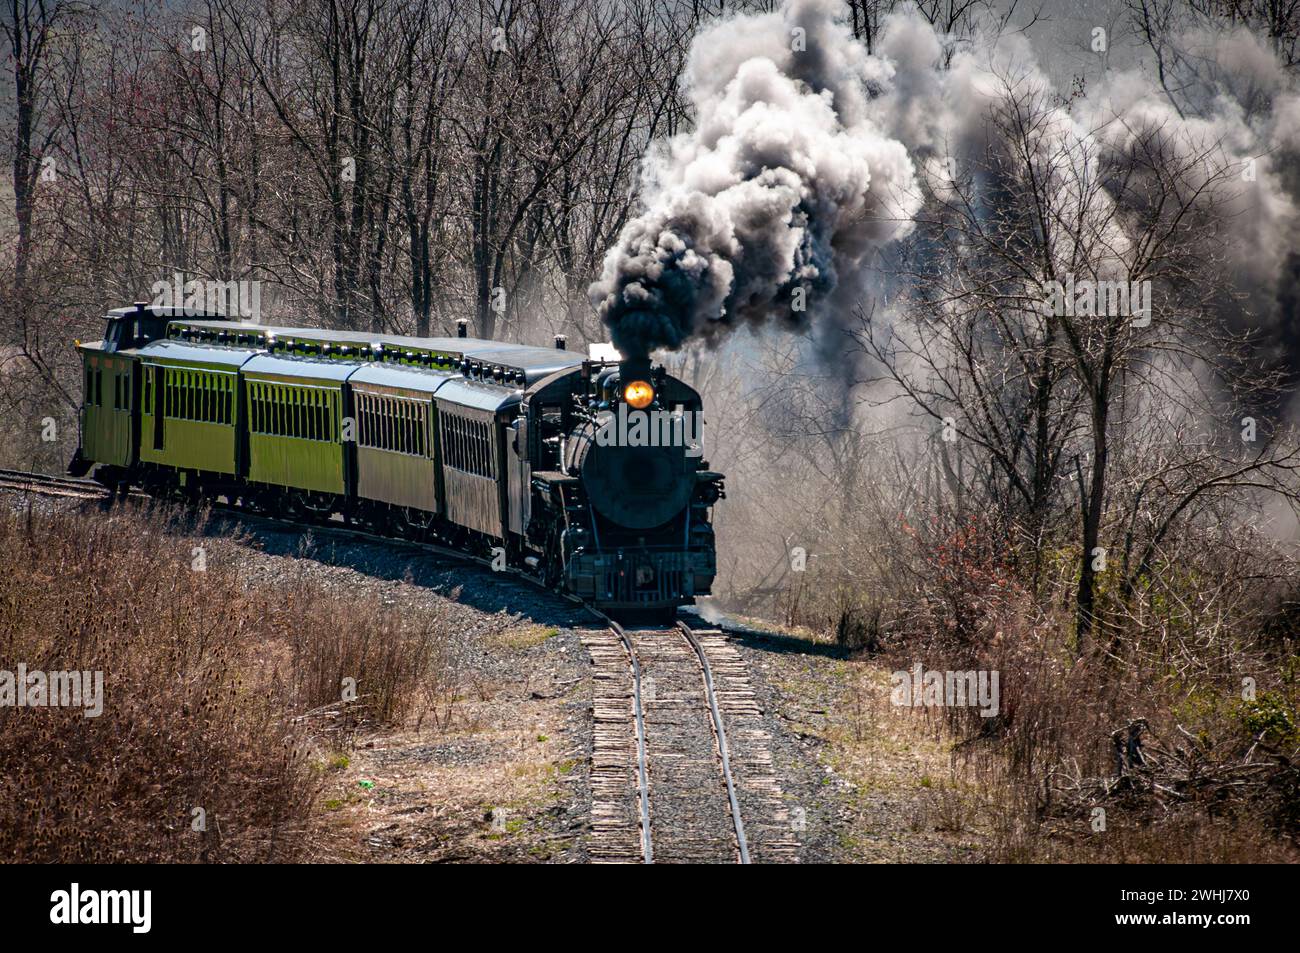 De face et légèrement au-dessus vue d'un train à vapeur passager à voie étroite restauré qui souffle de la fumée Banque D'Images